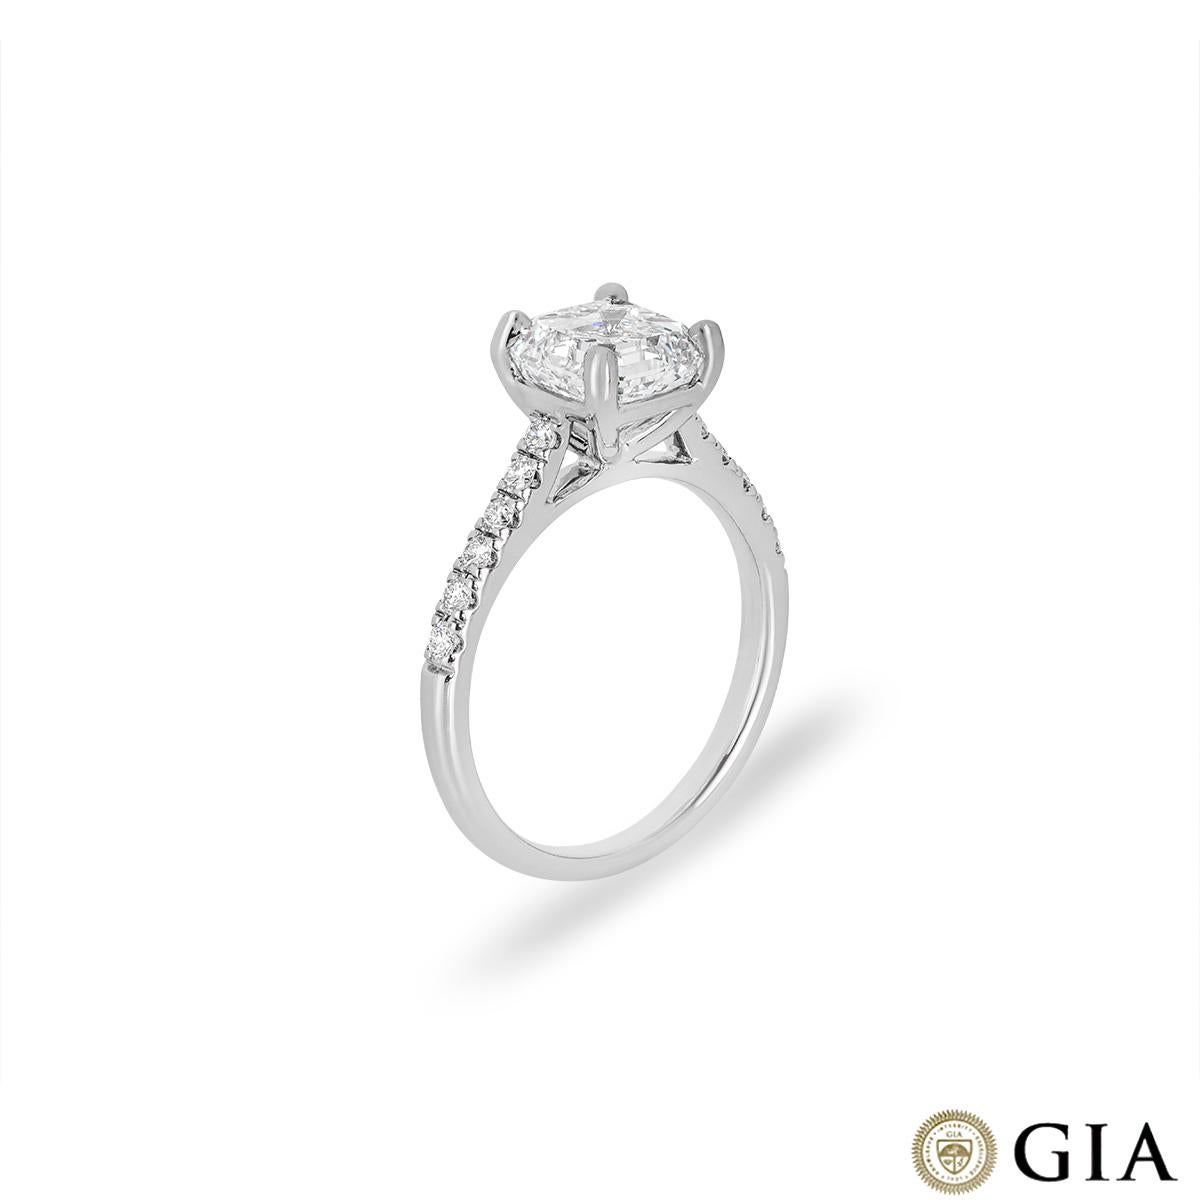 Ein atemberaubender Diamant-Verlobungsring aus 18 Karat Weißgold. Der Ring ist in der Mitte mit einem faszinierenden Diamanten im Asscher-Schliff mit einem Gewicht von 2,40ct, Farbe G und Reinheit VS1 besetzt. Der zentrale Diamant wird von 12 runden